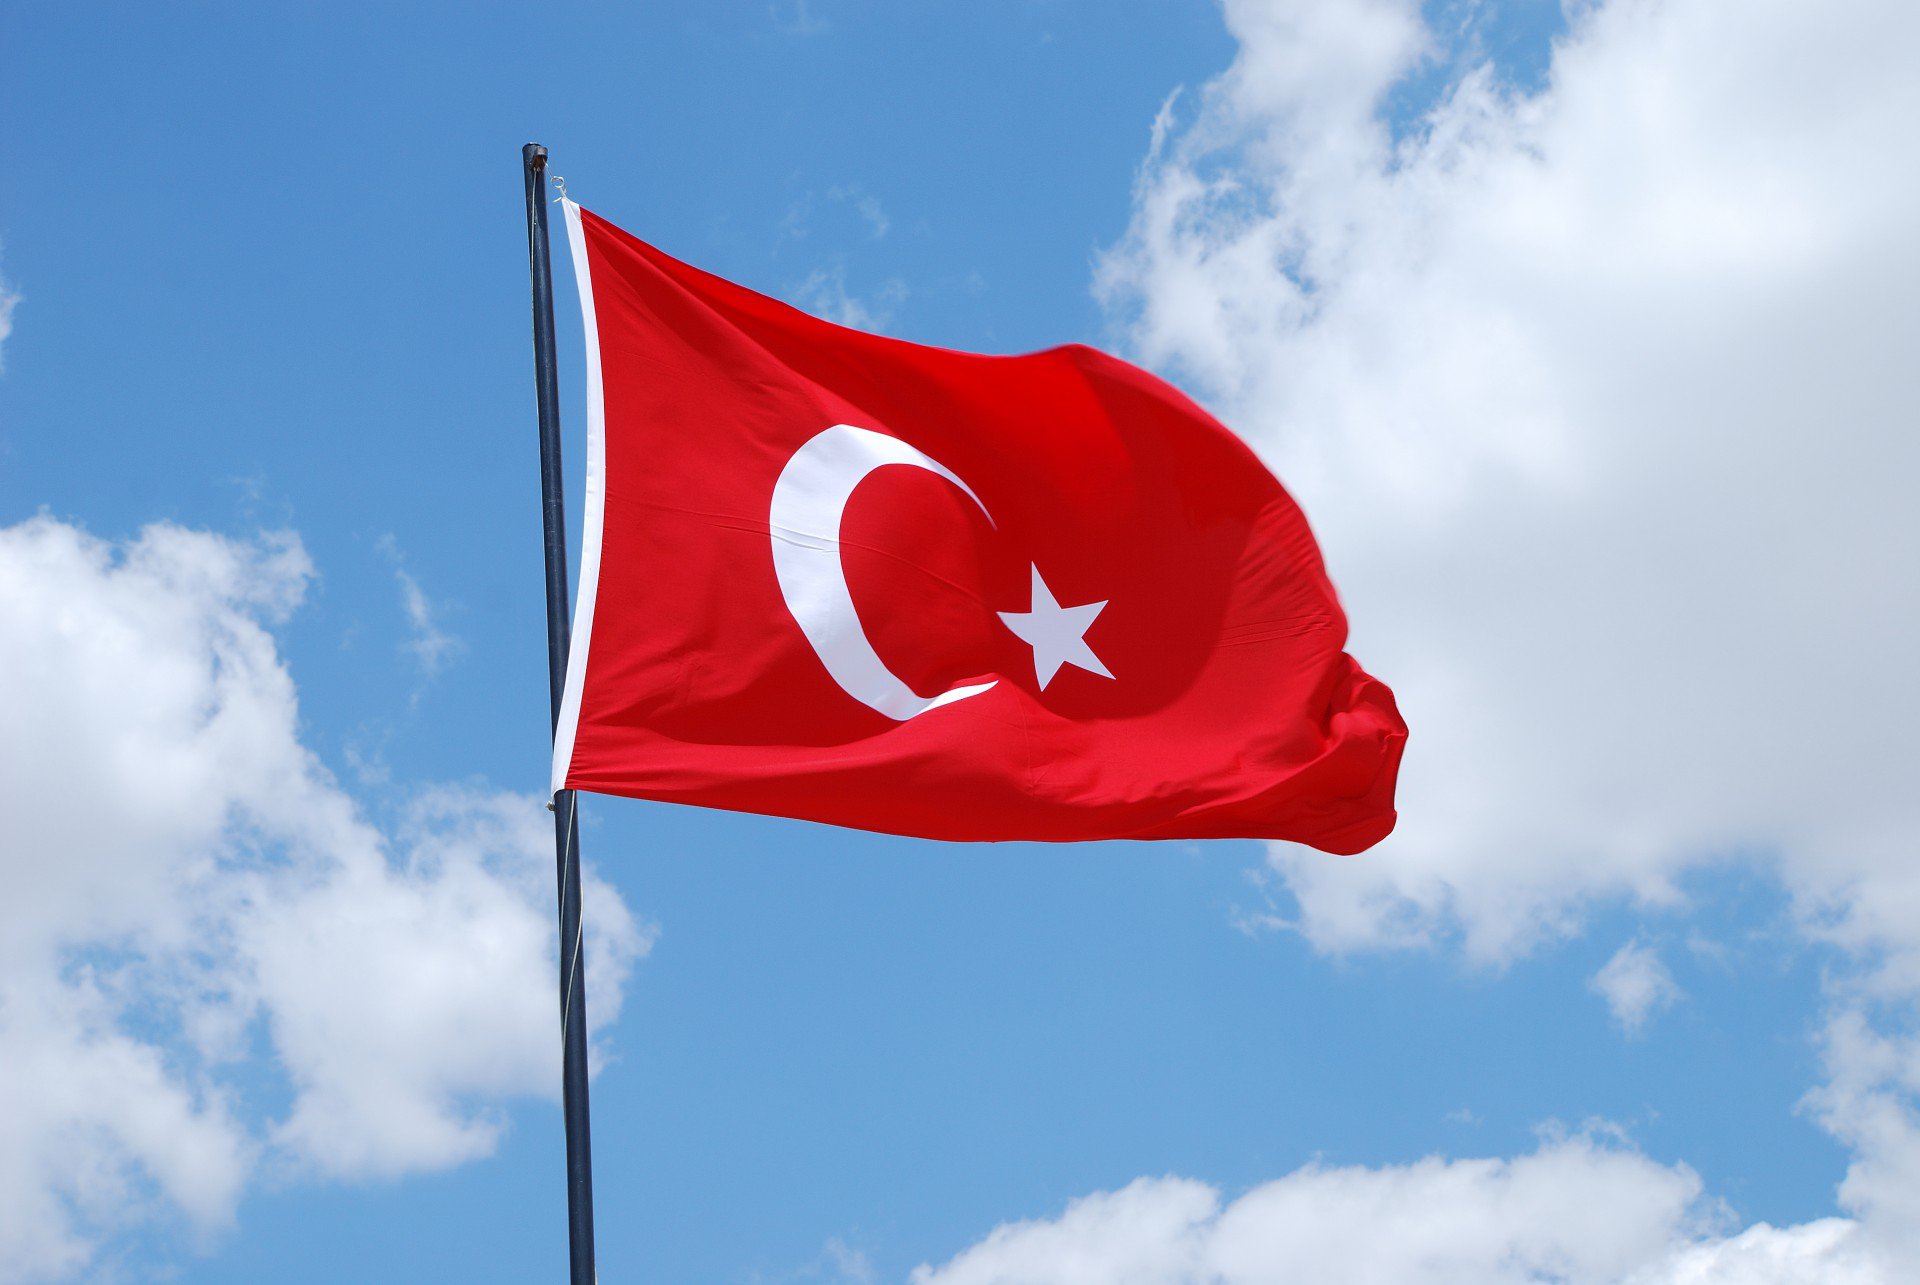 Türkiyə-Ermənistan dialoqu reallığa çevrilir? – Rəsmi açıqlamalarda gizlənən MESAJLAR